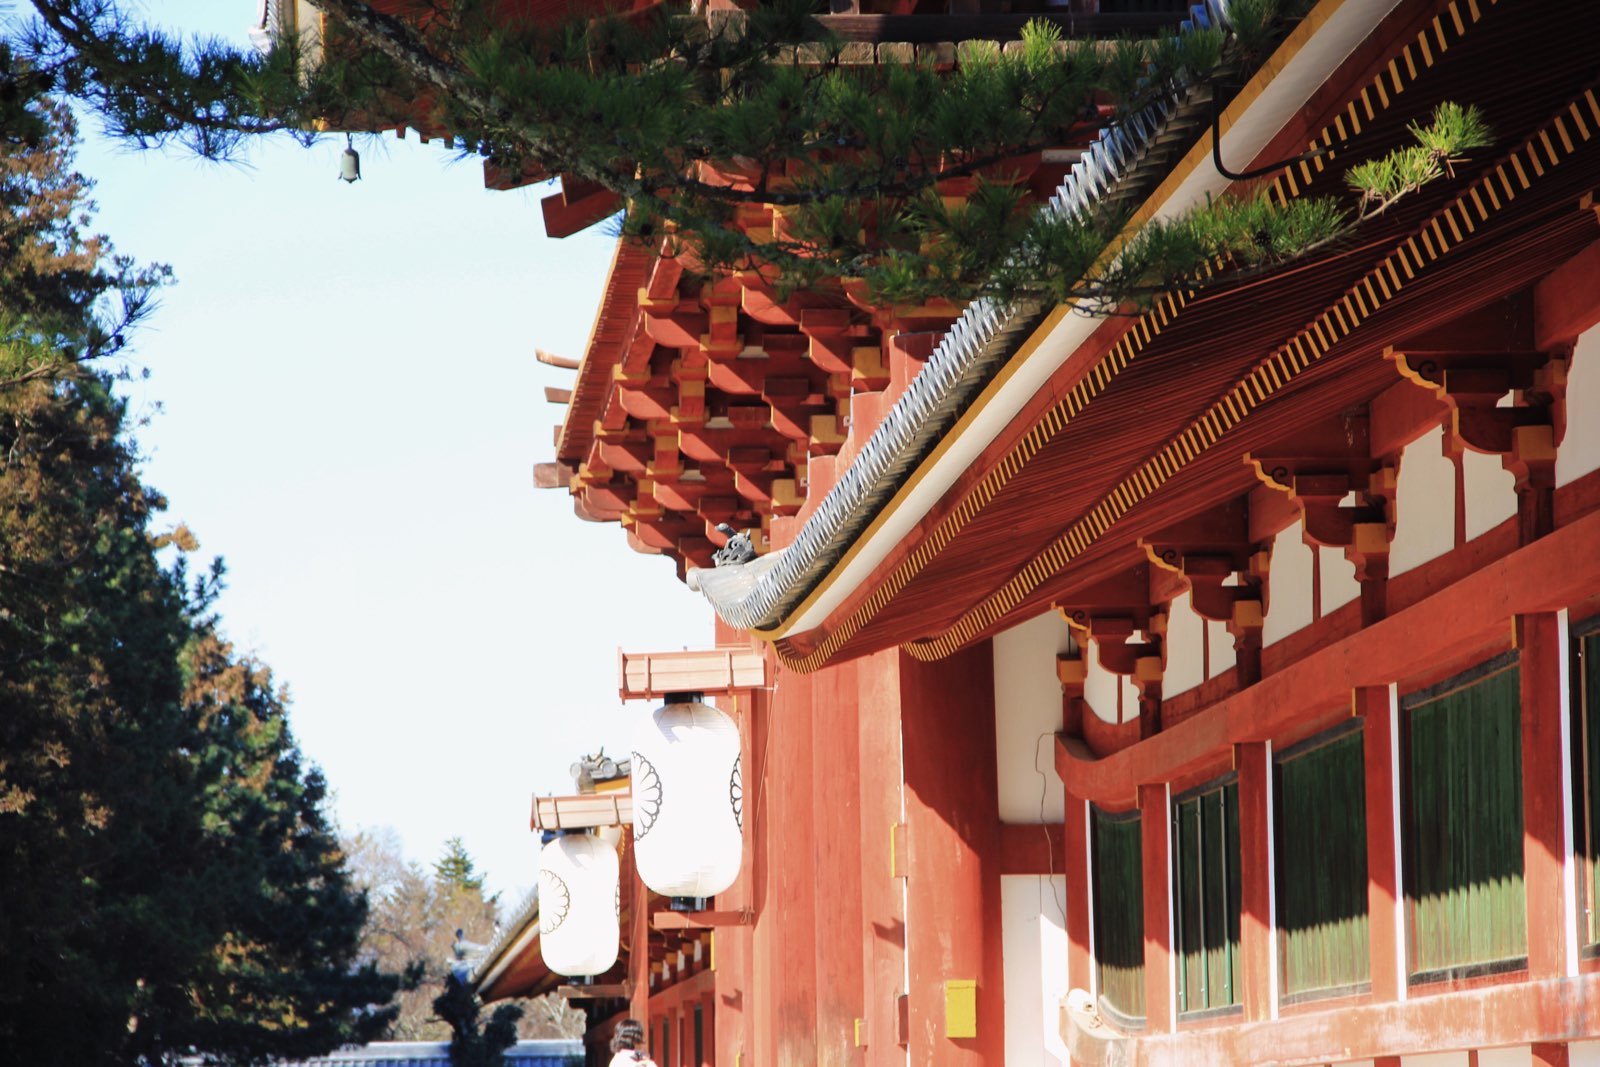 精致的建筑保留了宋朝遗风，据说要看中国唐宋时期建筑就应该在京都和奈良多